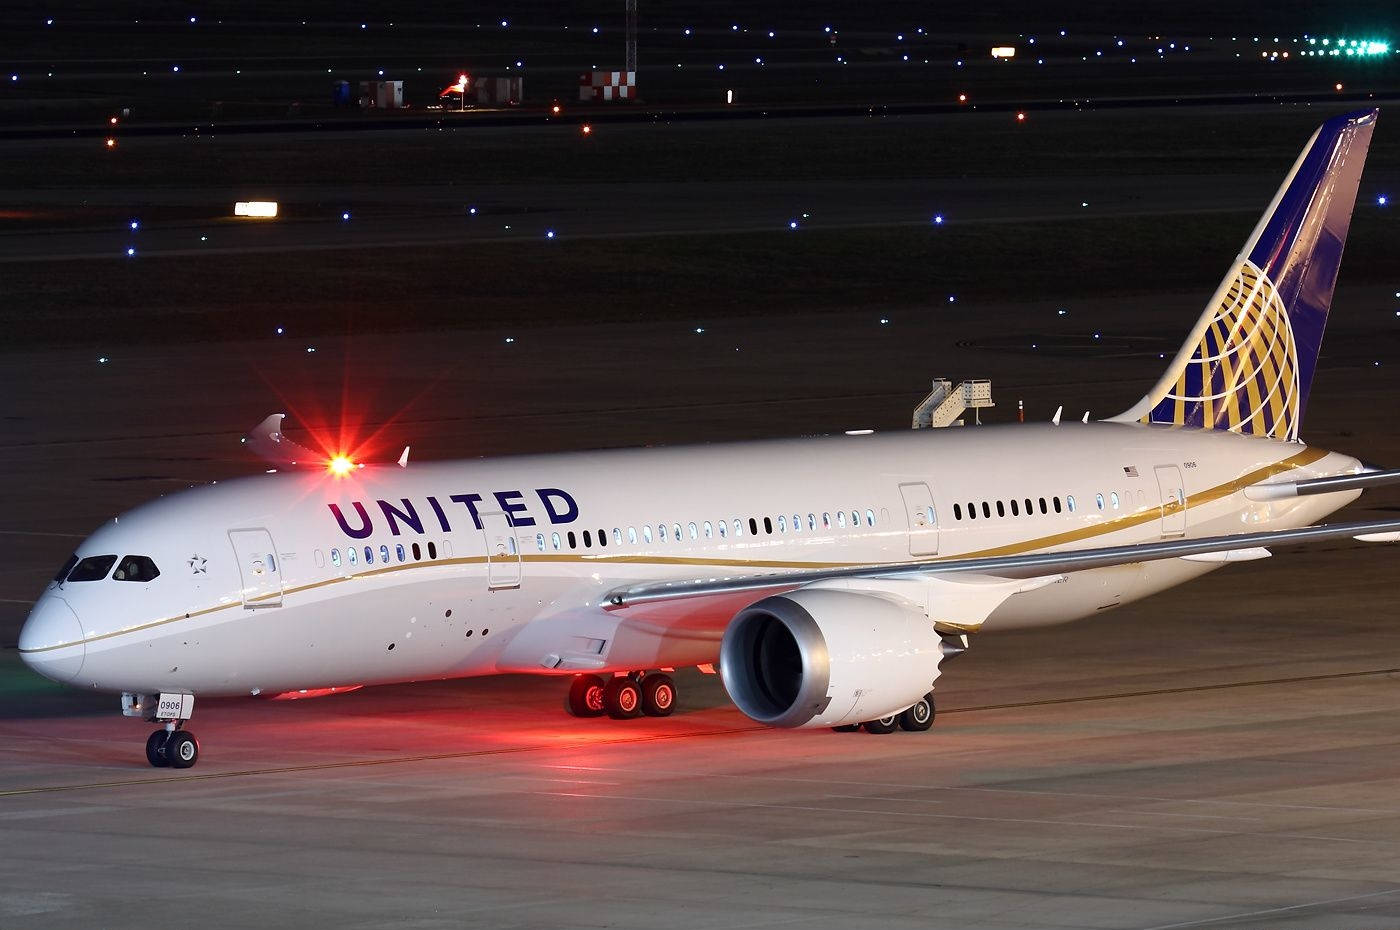 Sceneriet af et nedstyrtet United Airlines-fly mod en blå himmel Wallpaper